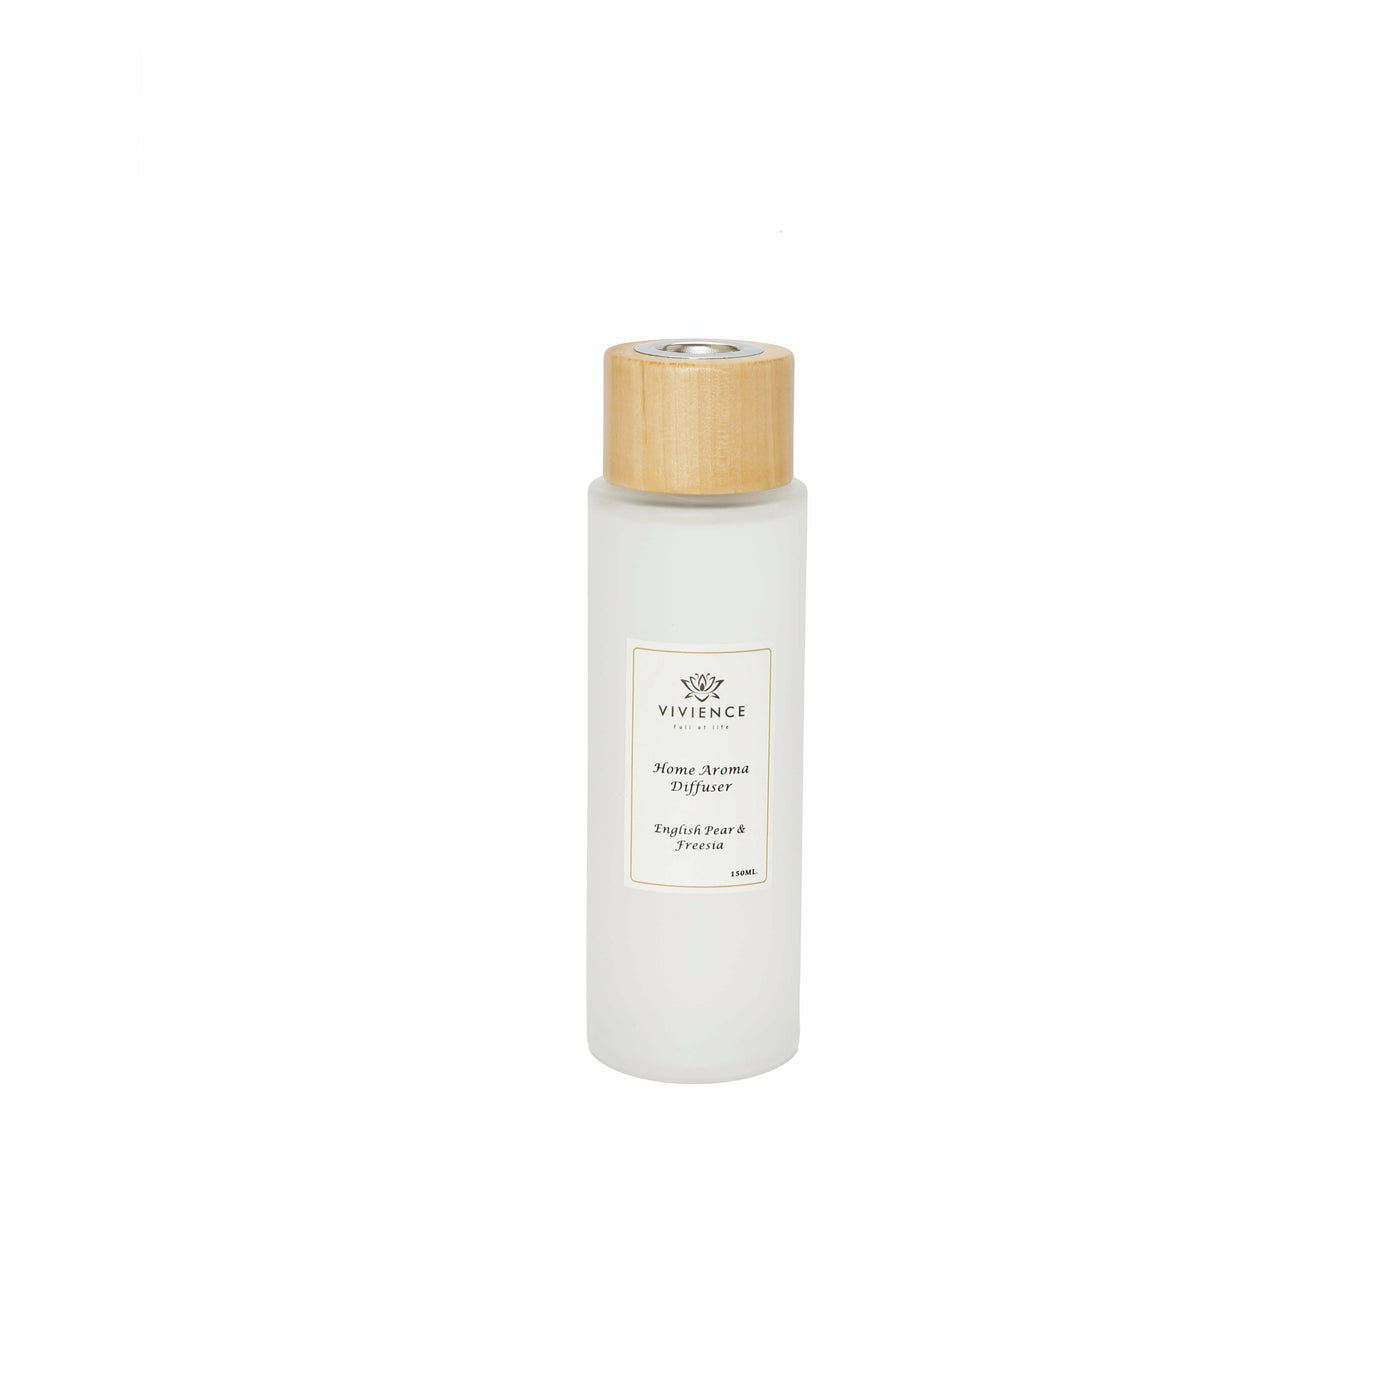 Round White Bottle Diffuser - "White Flower" scent